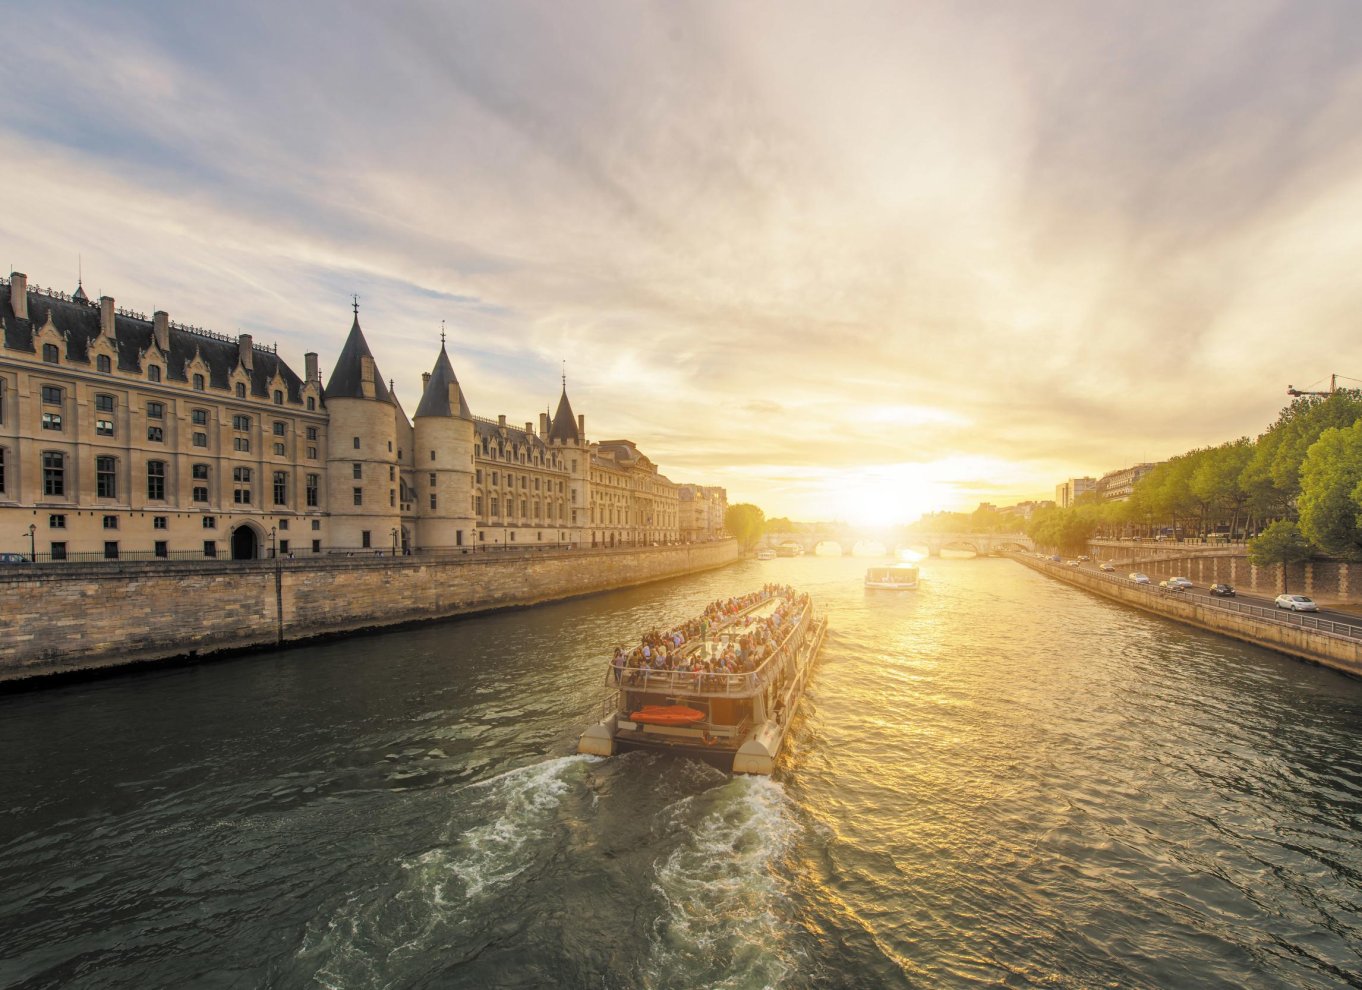 paris illuminations river cruise